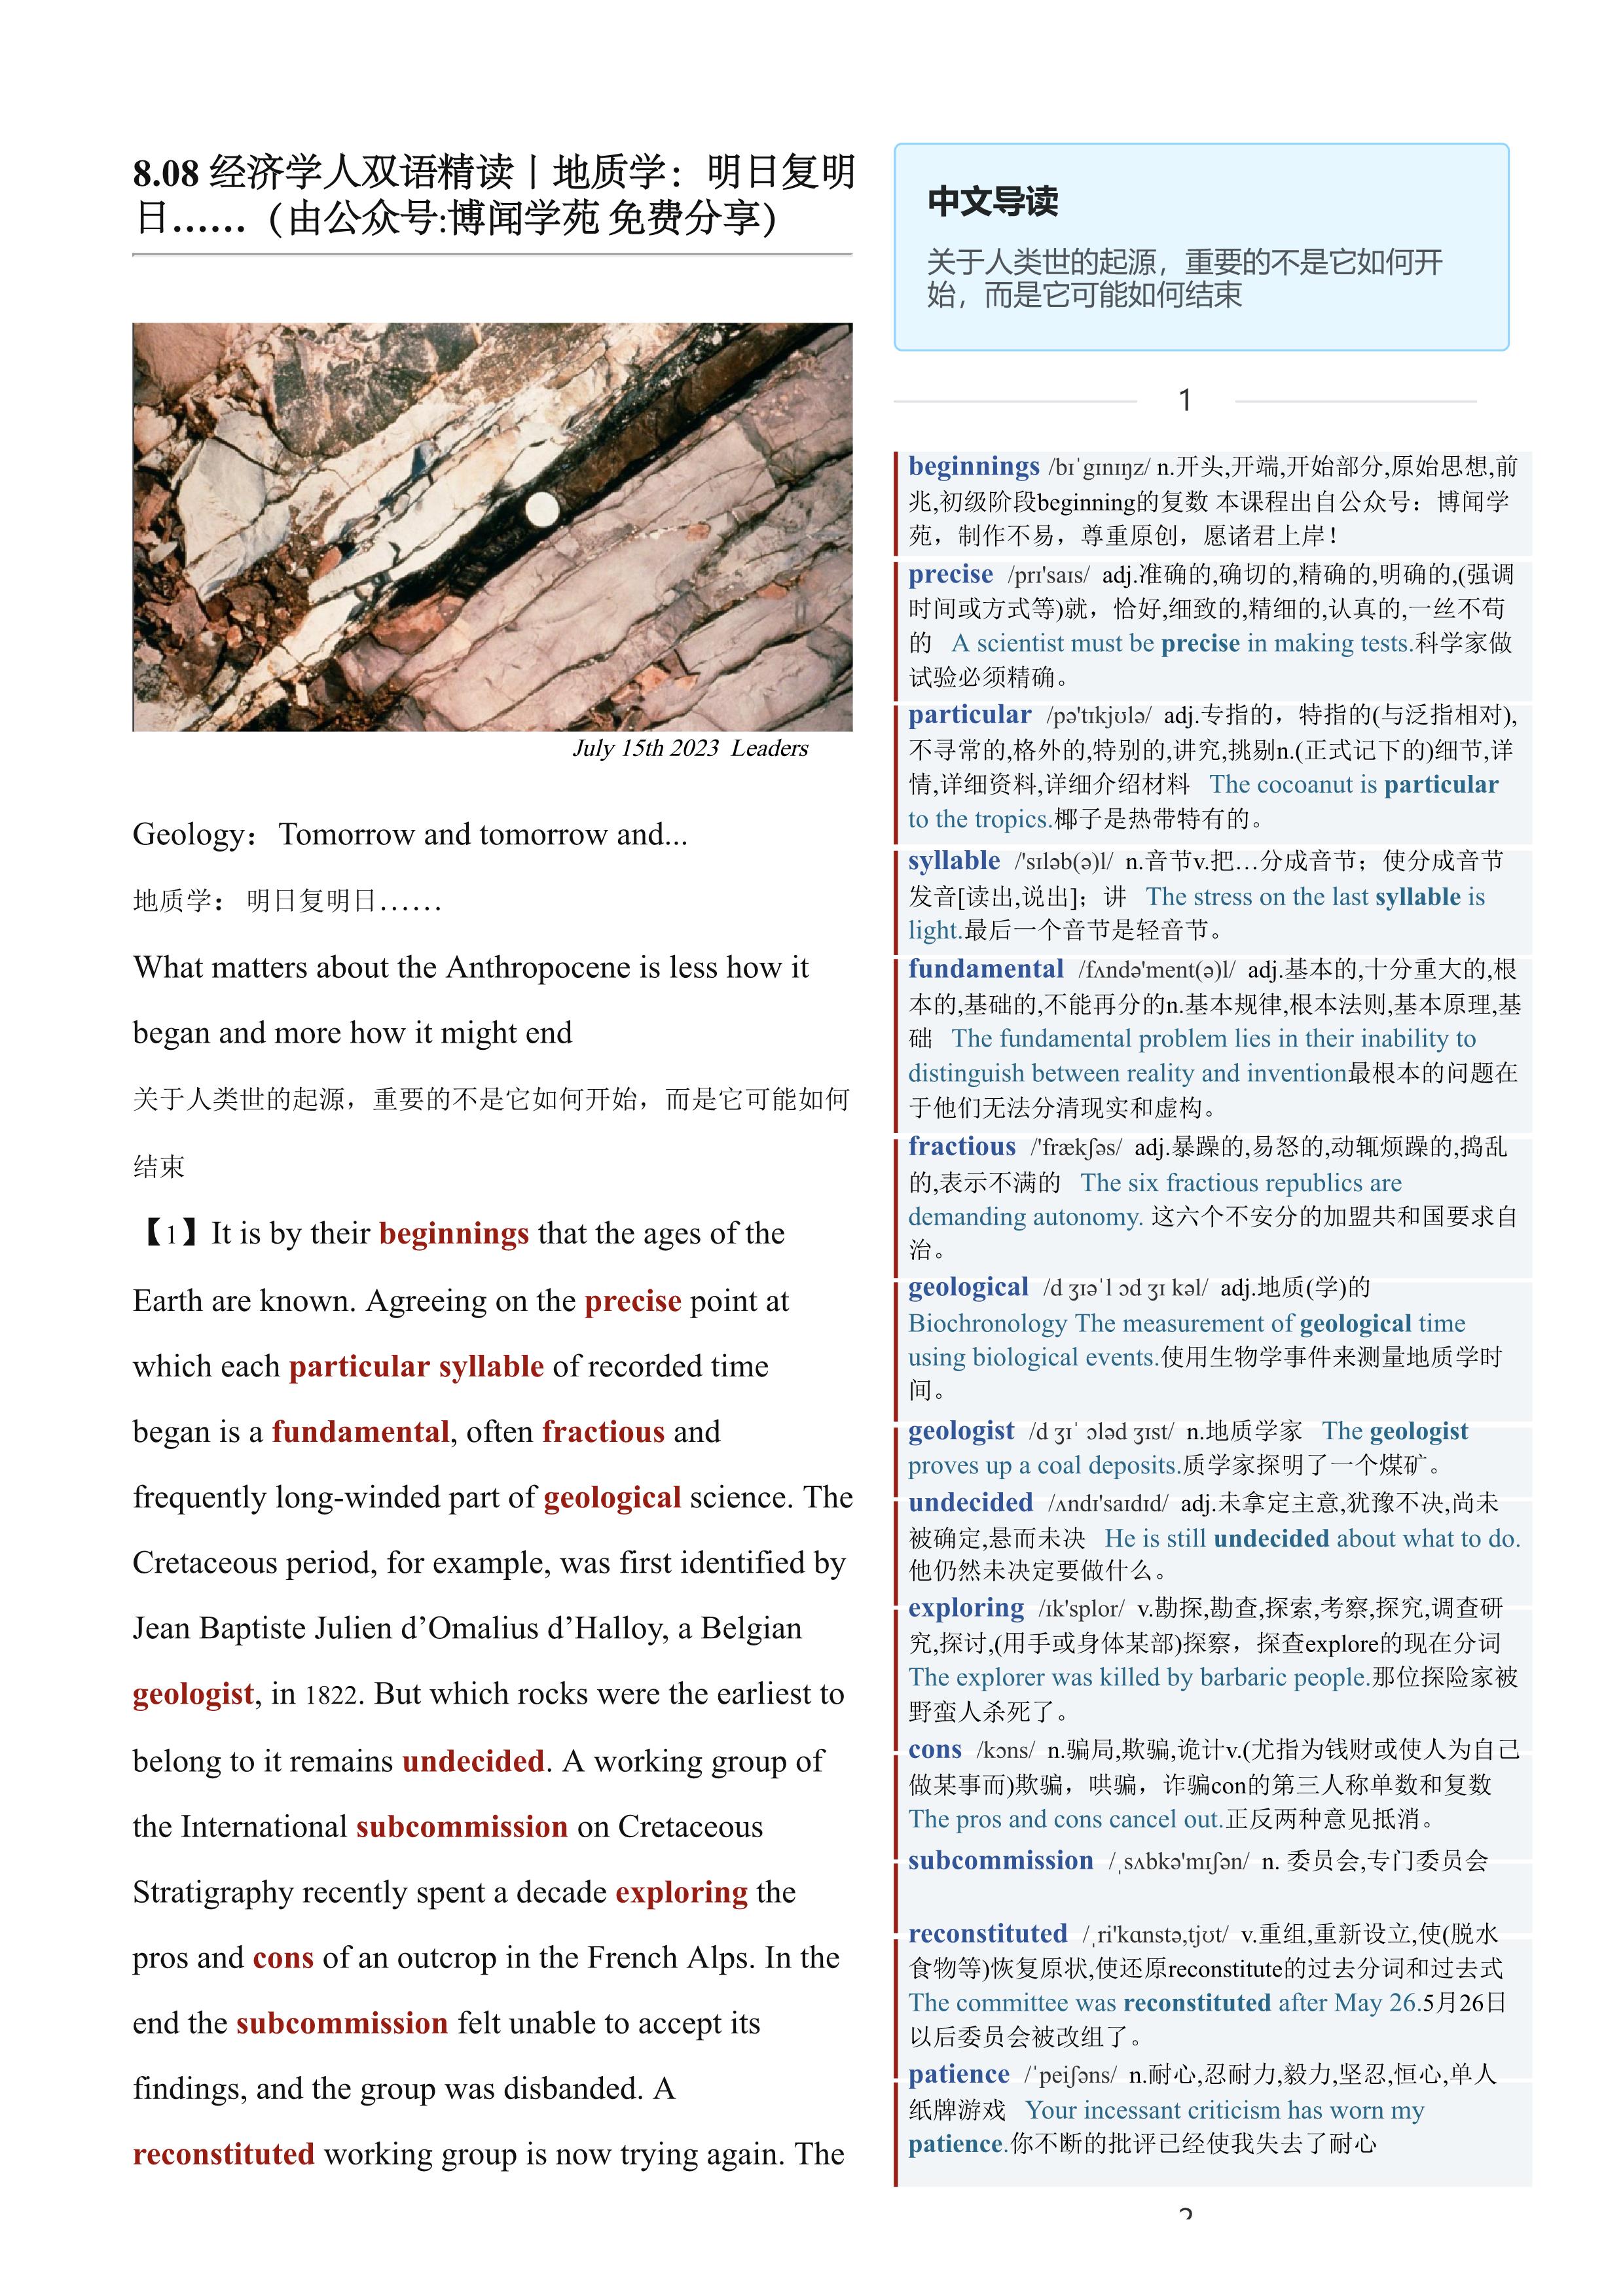 2023.08.08 经济学人双语精读丨地质学：明日复明日…… (.PDF/DOC/MP3)